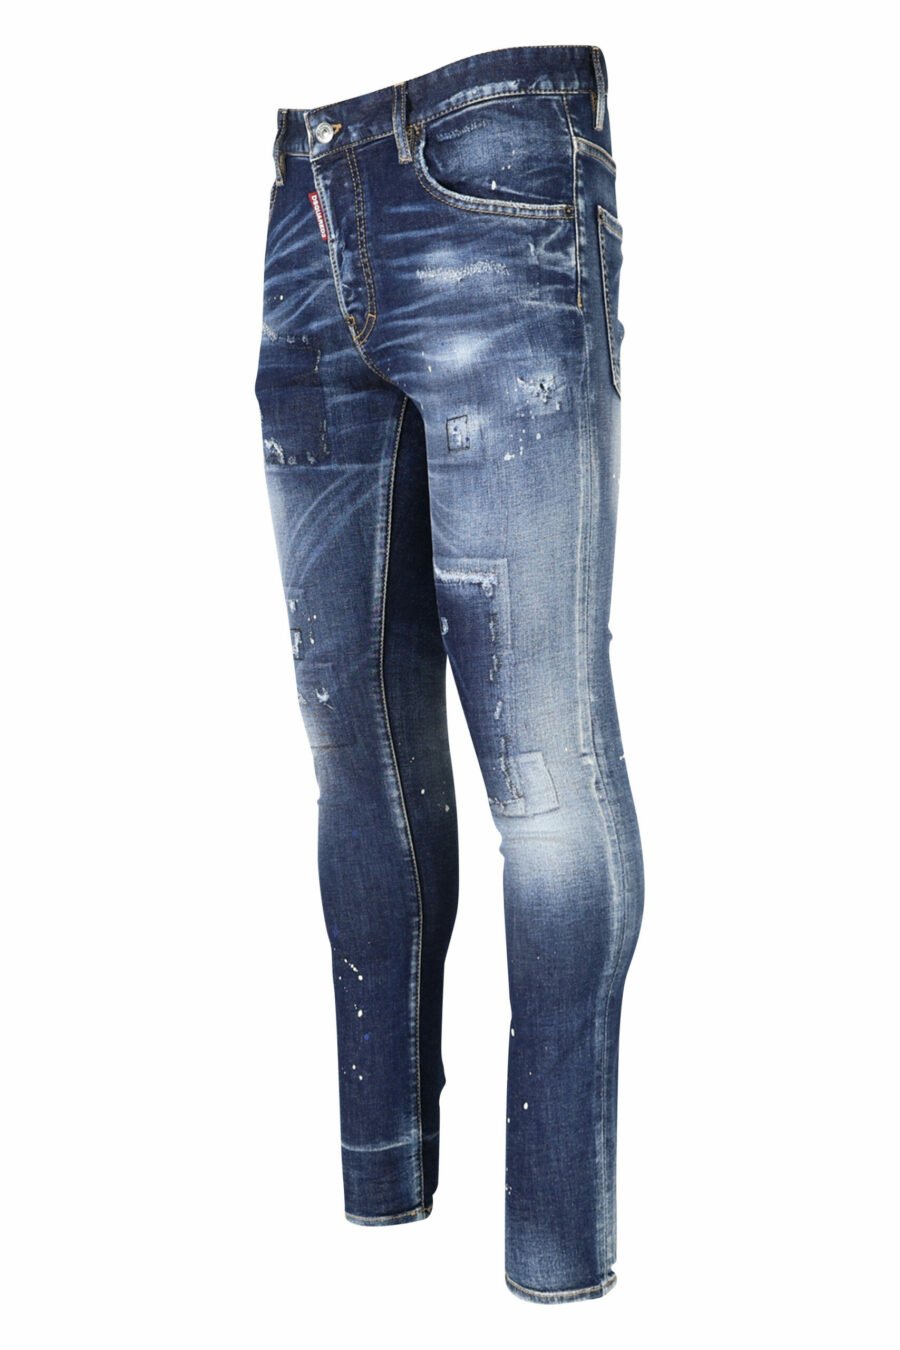 Blaue "super twinky jean" Jeans mit Patch und ausgefranst - 8054148104863 1 skaliert